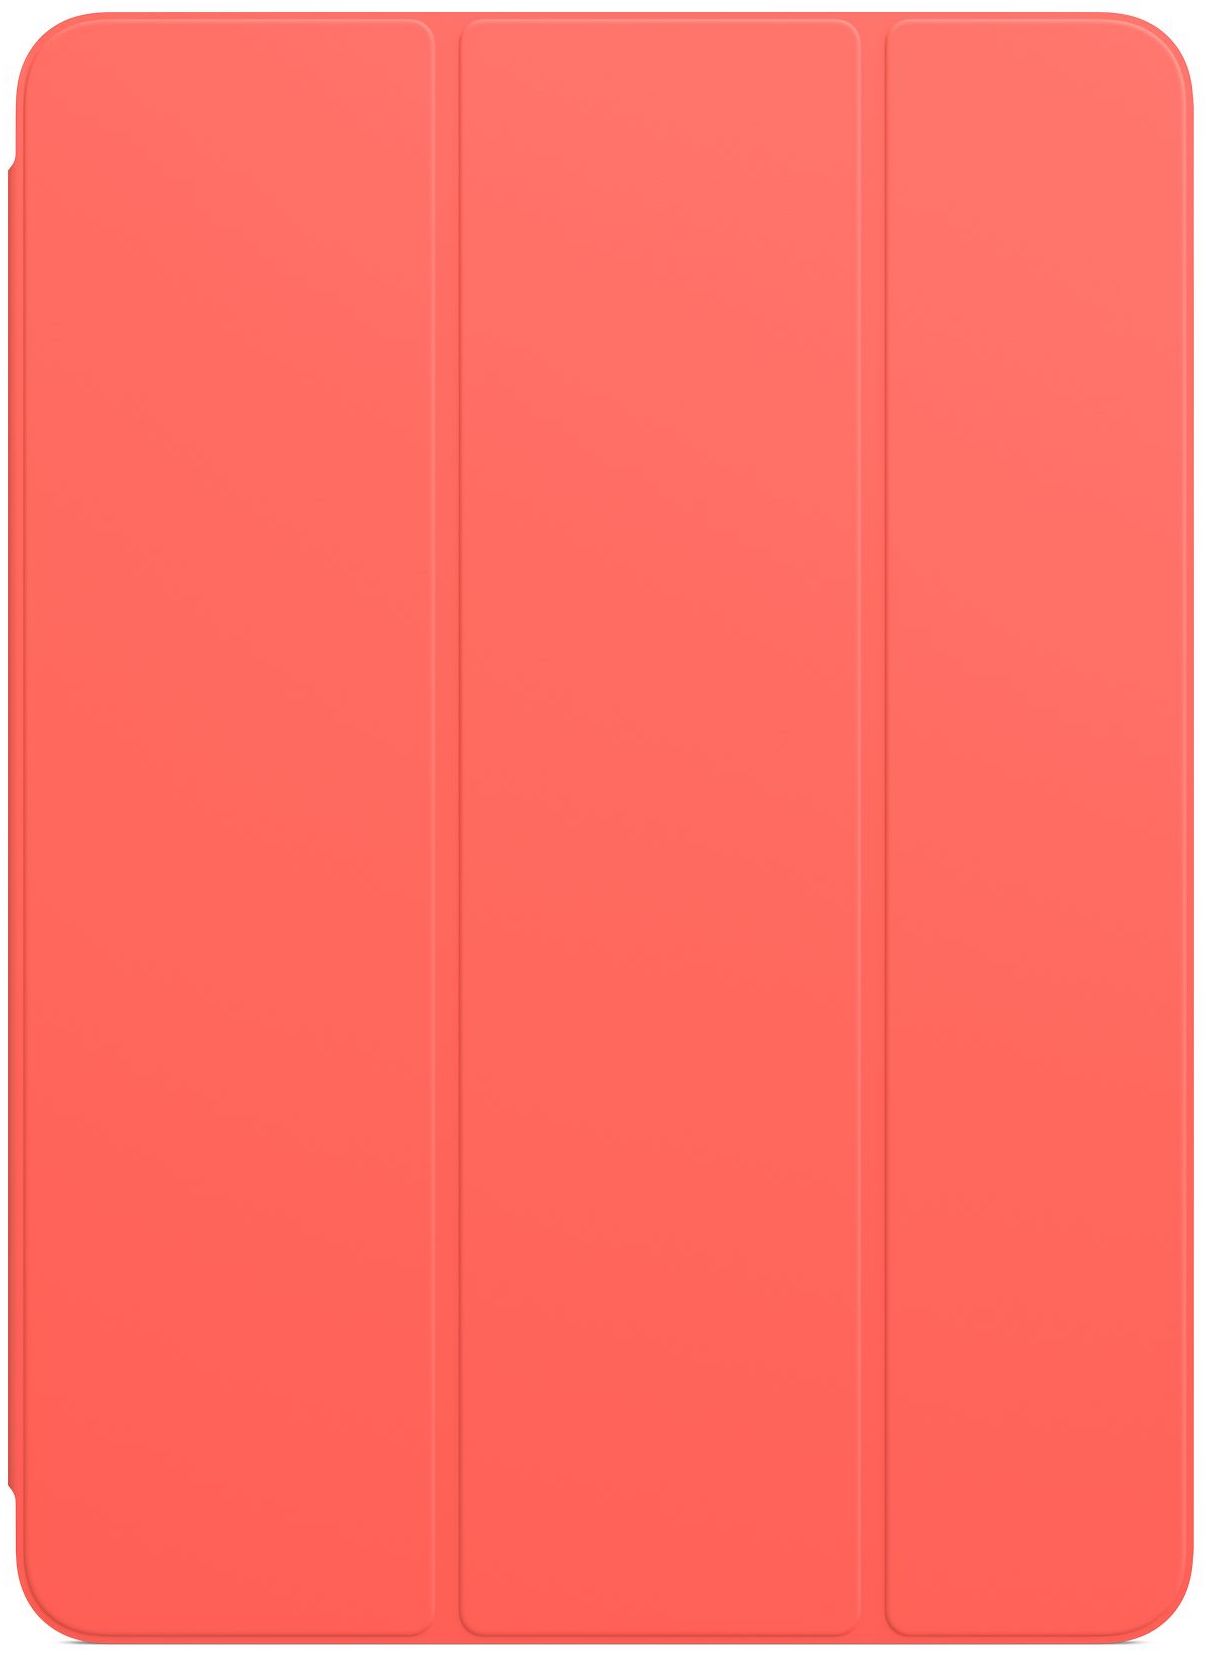 Ipad Air 4 Smart Folio Pink Citrus Apple